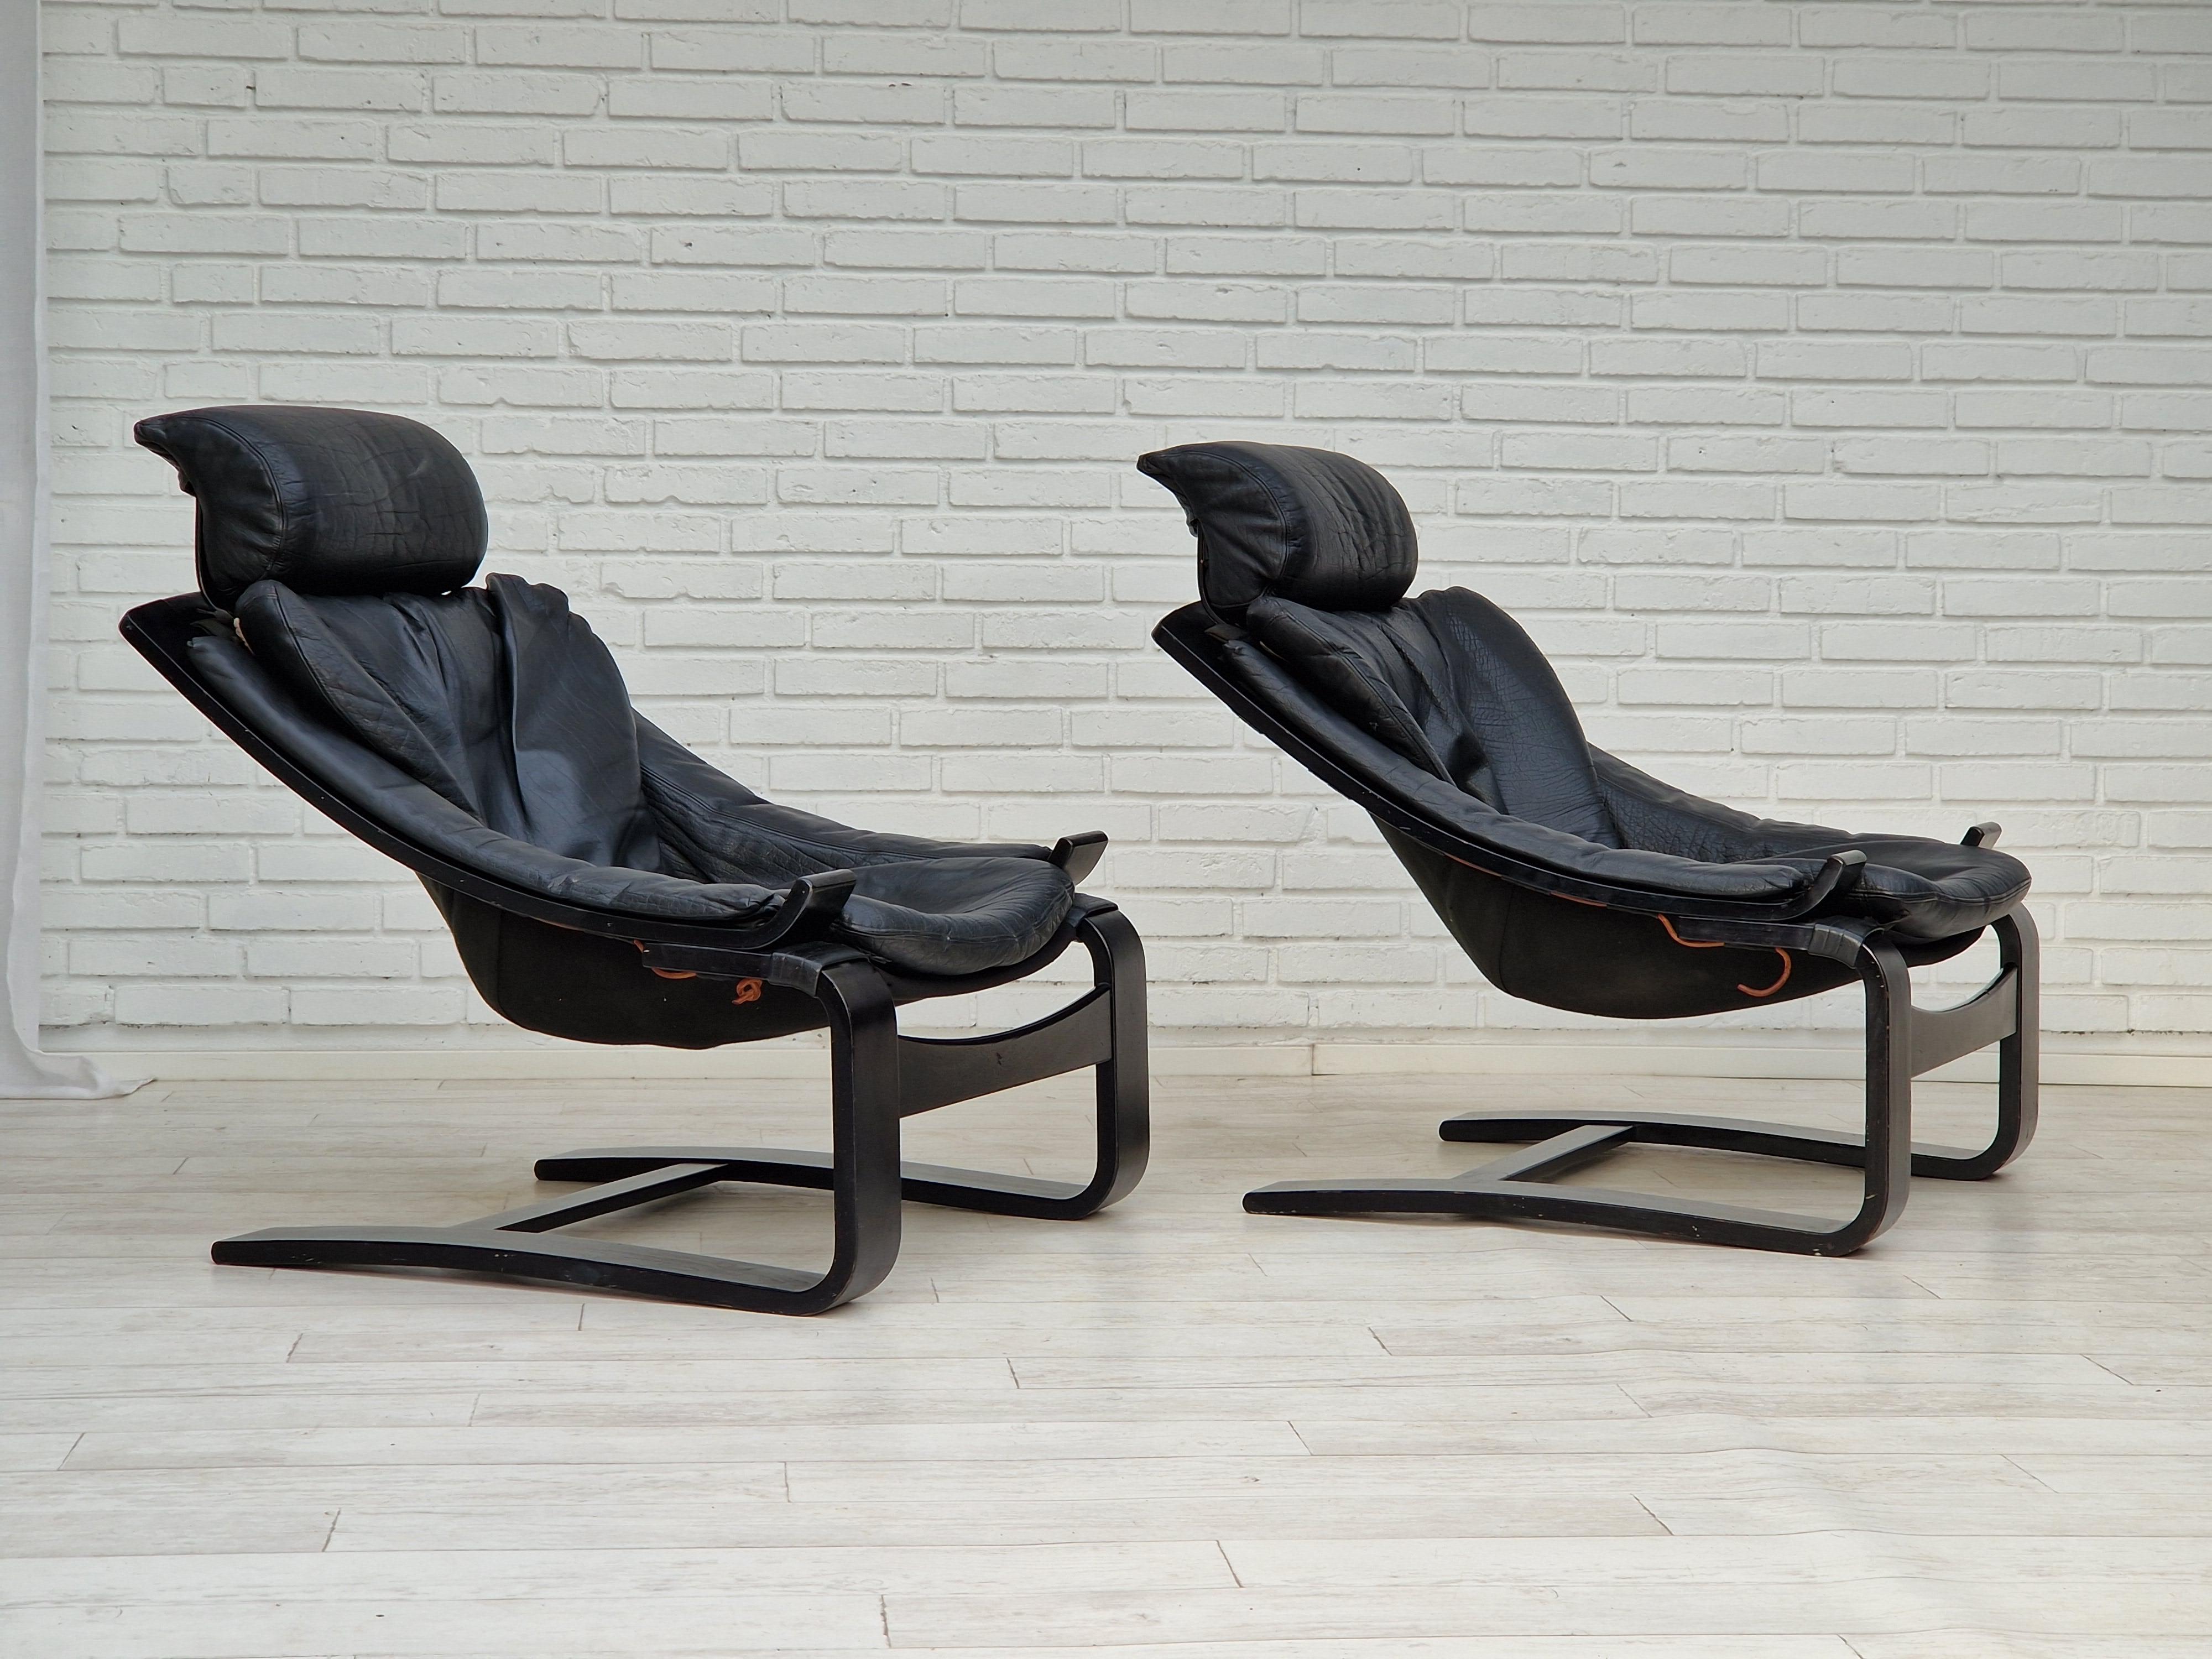 Kroken Chair - 7 For Sale on 1stDibs | kroken stol, nelo kroken chair,  swedish kroken